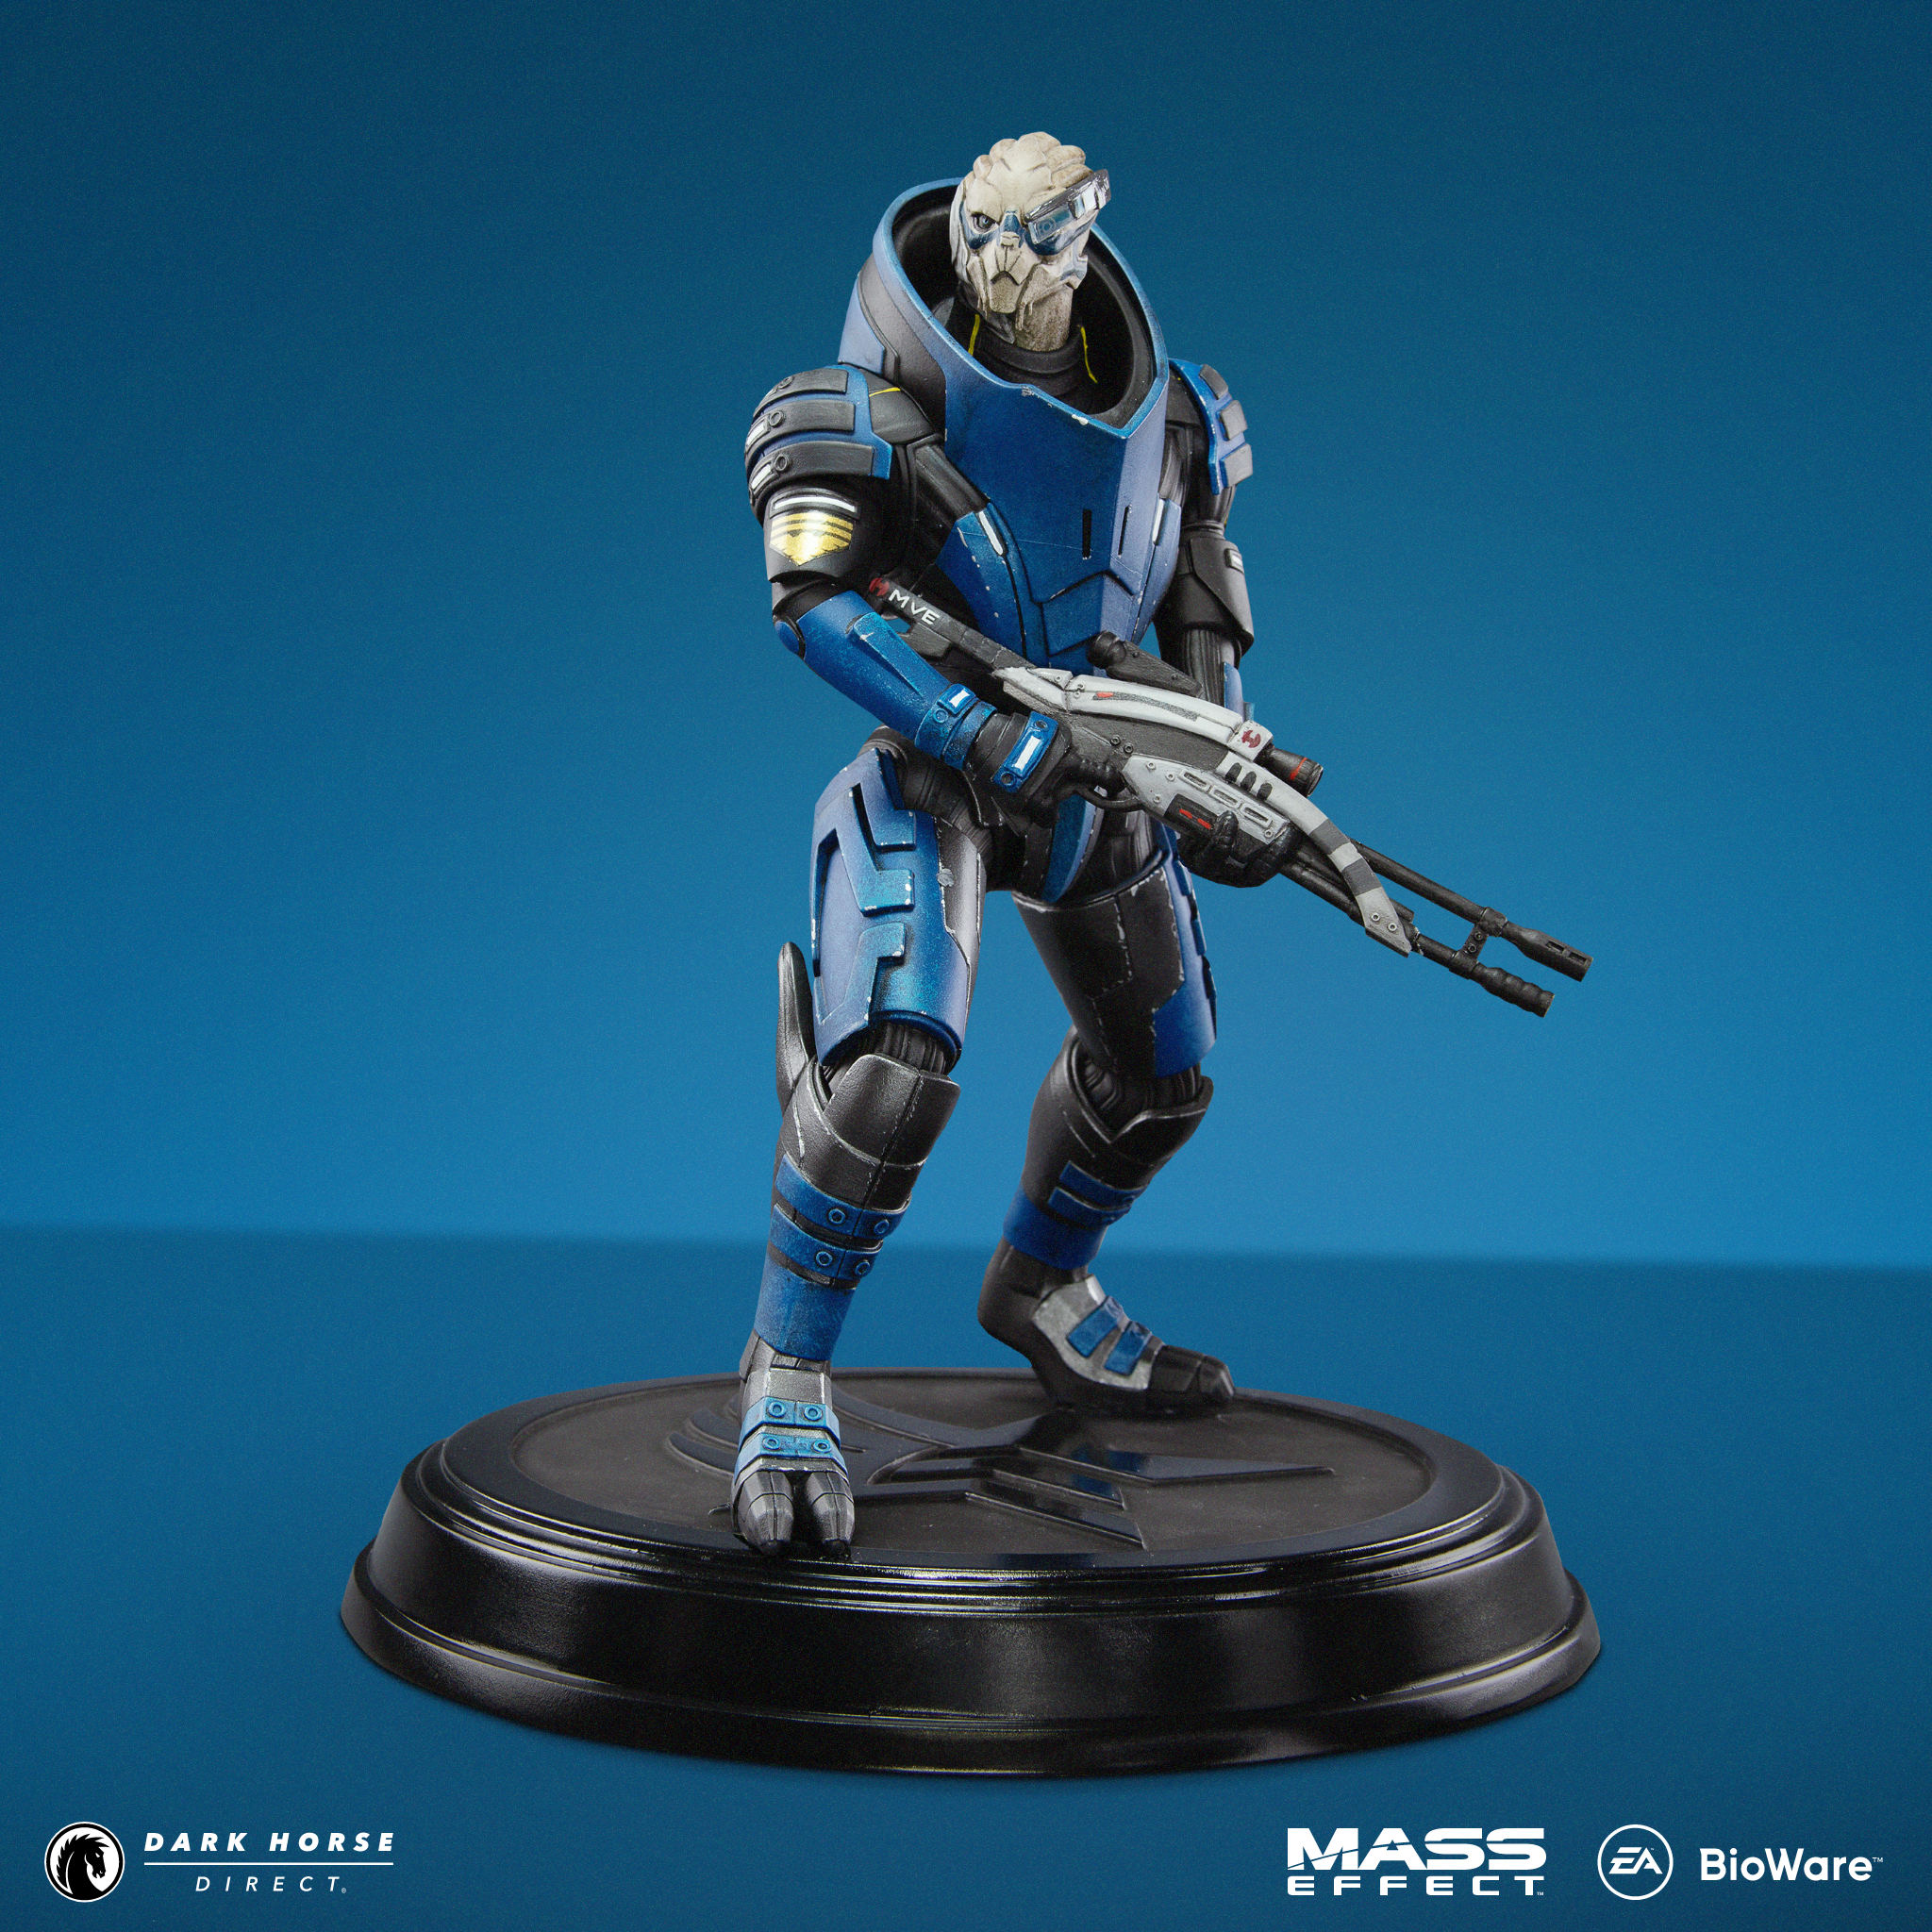 Prefix Struggle Pants Mass Effect: Garrus Vakarian Figure – Dark Horse Direct